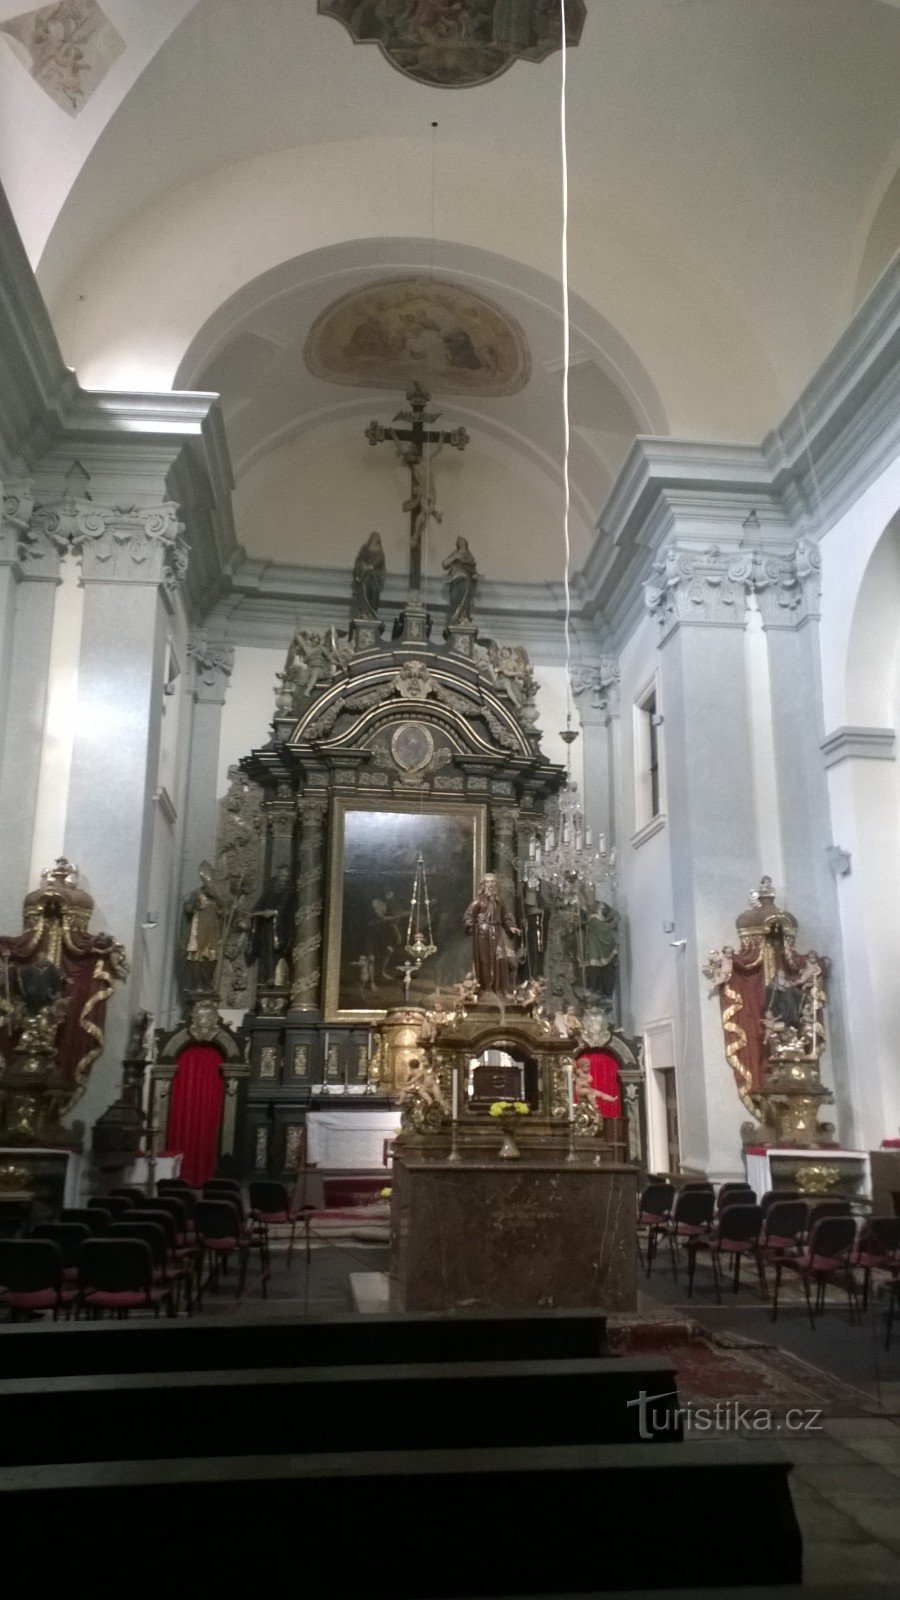 St. Jan pod Skalou - egy gyönyörű hely a Cseh-karsztban